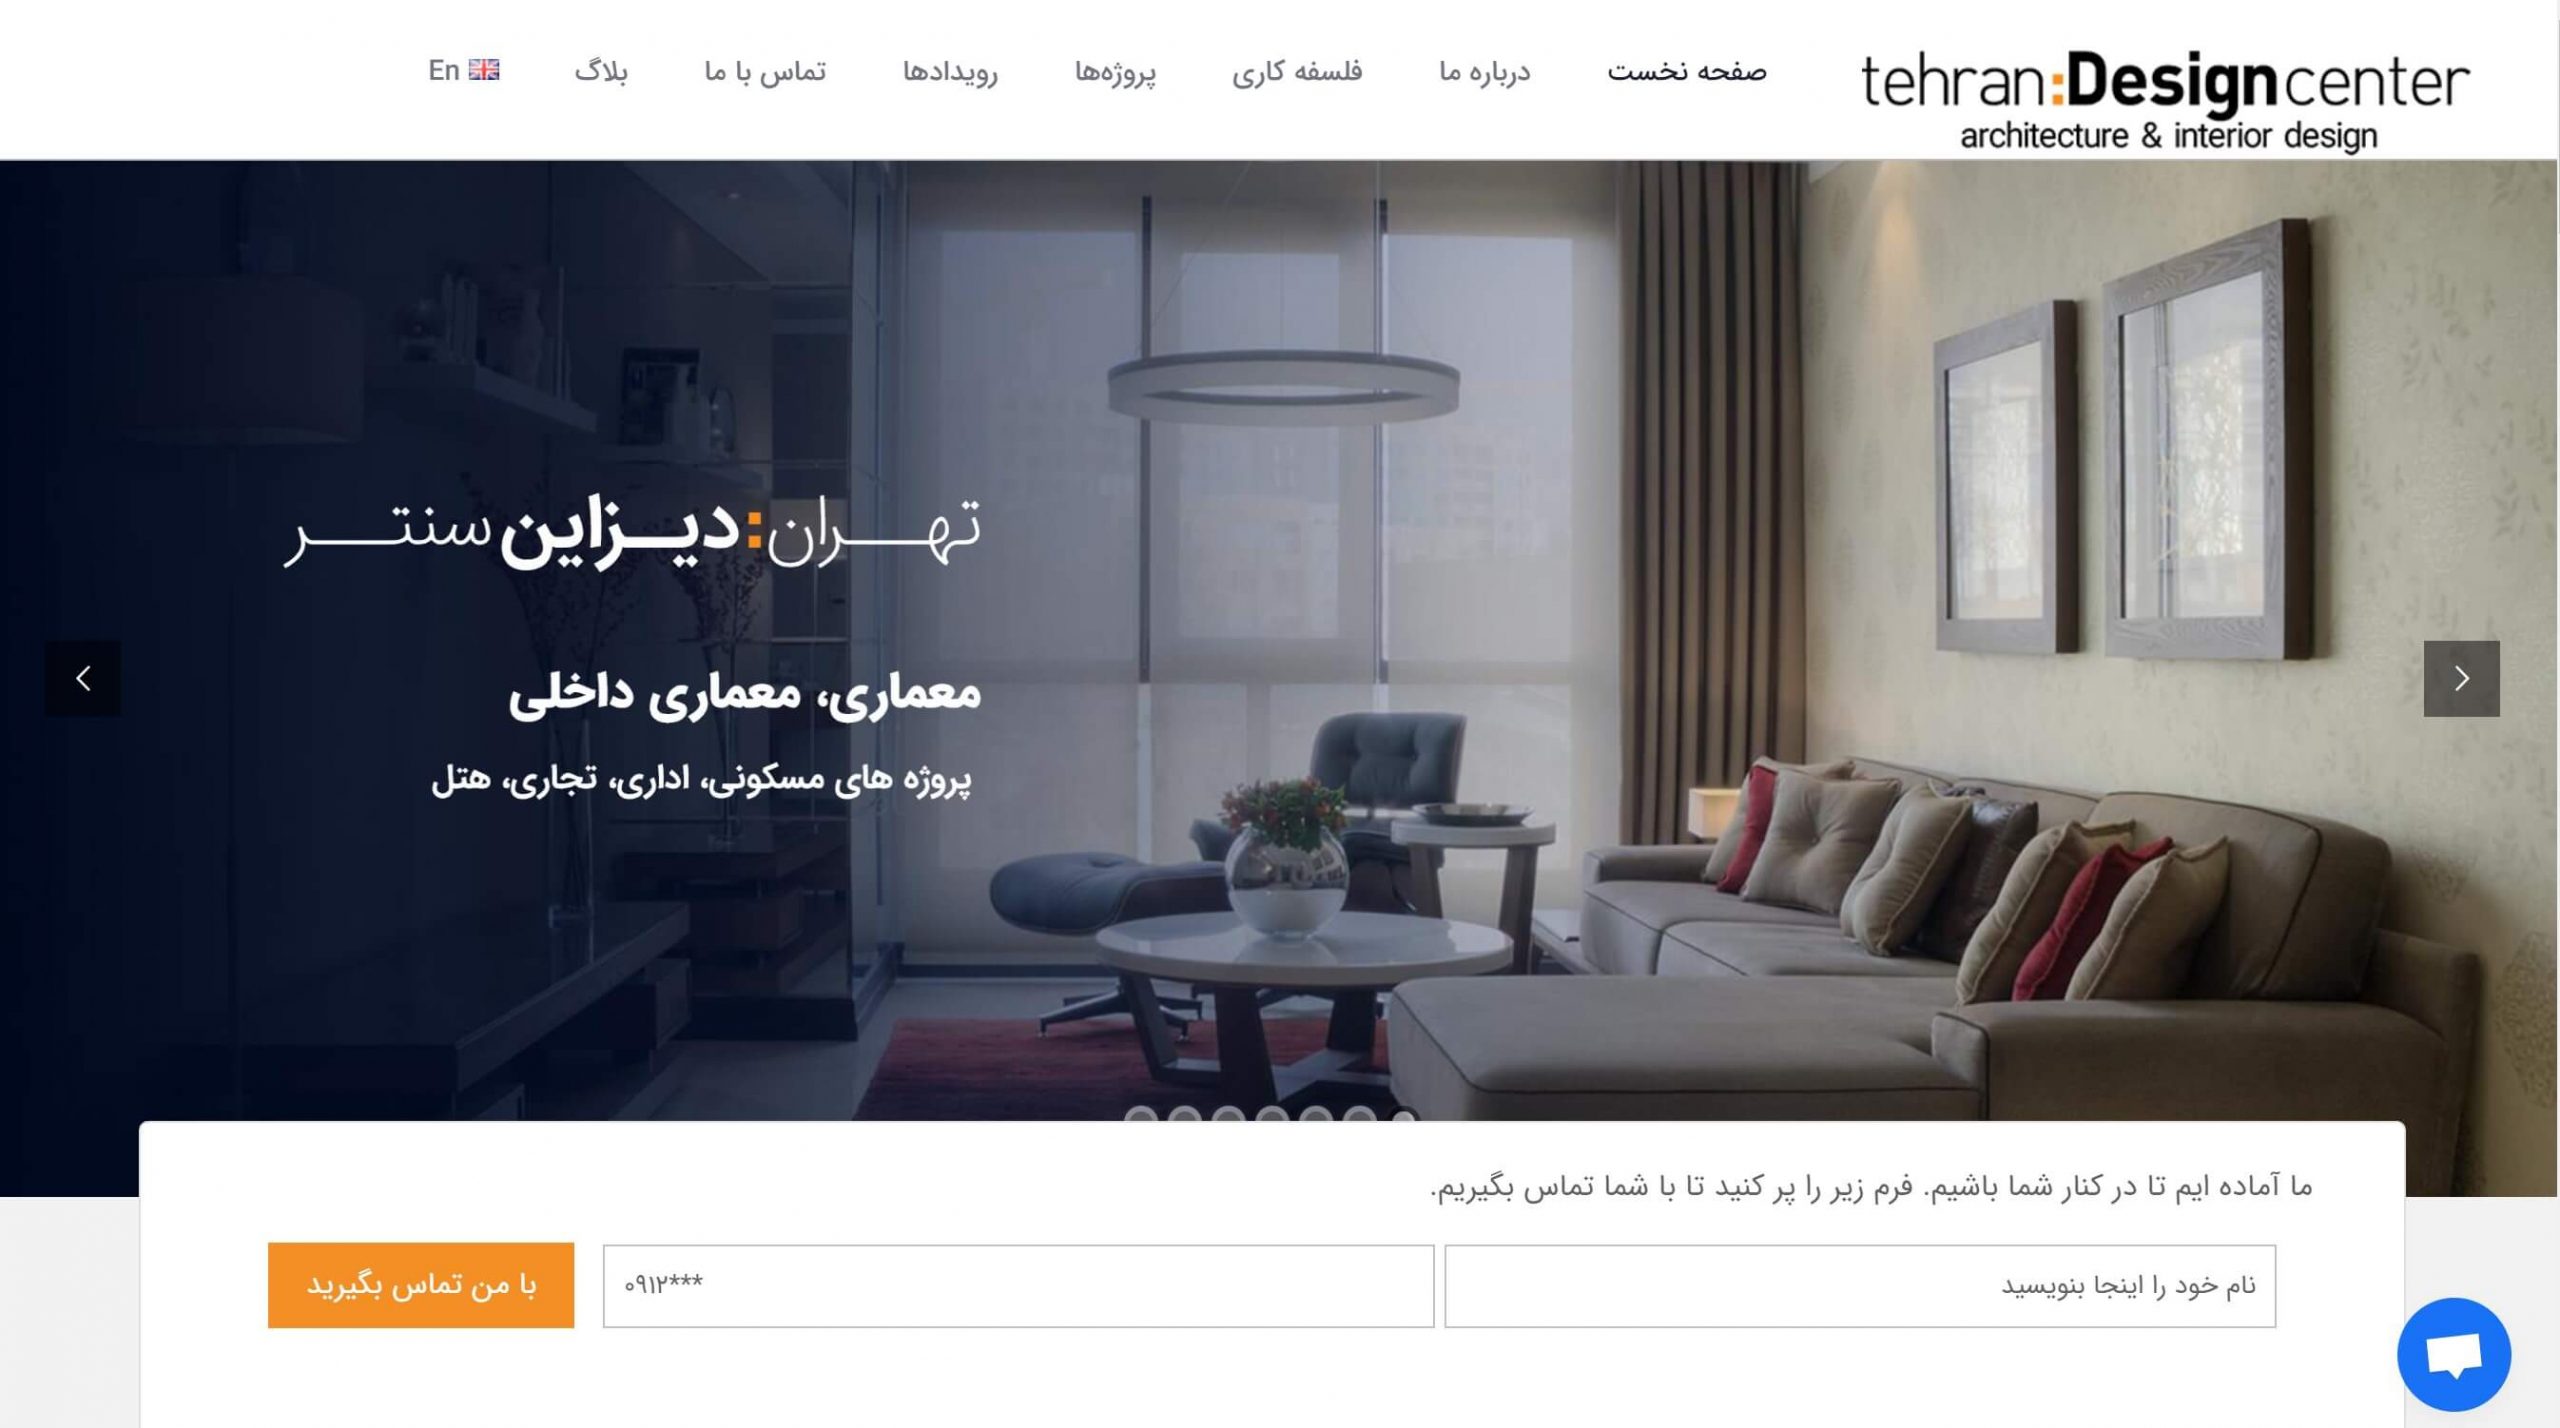 نمای وبسایت تهران دیزاین سنتر اجرا شده توسط آژانس دیجیتال مارکتینگ دیمآژن